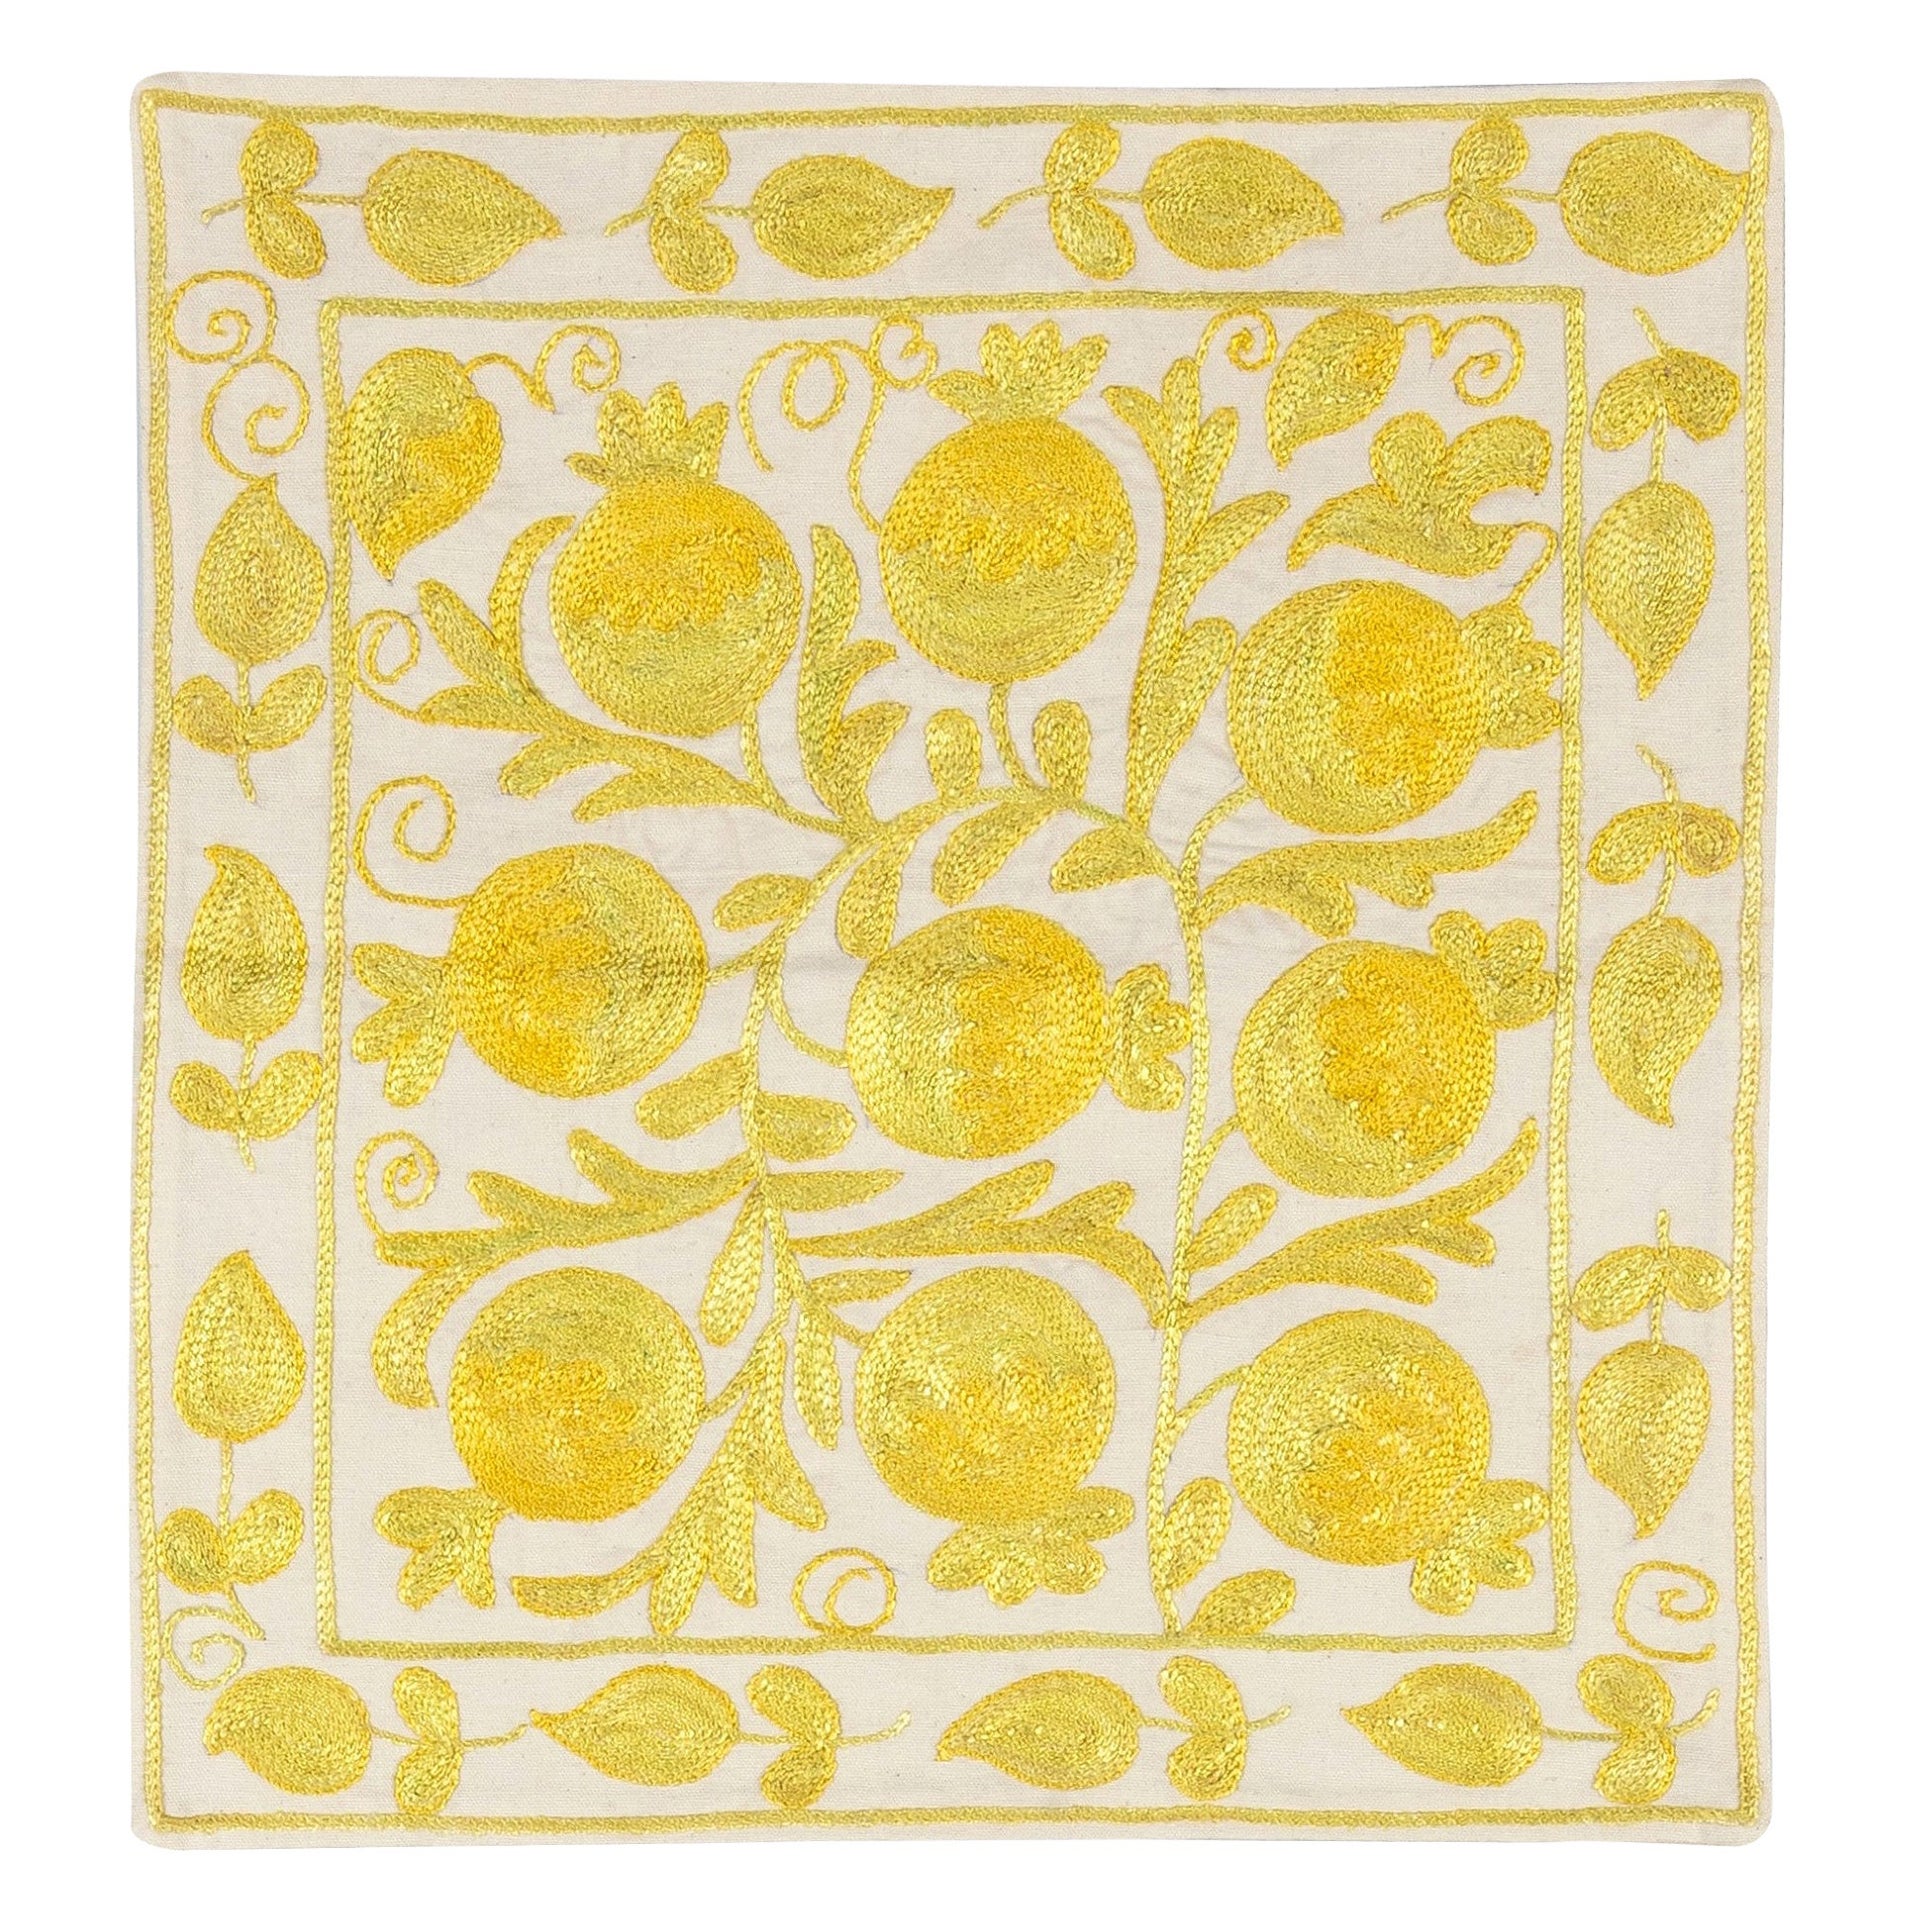 17x17 Zoll dekorative Seiden-Handstickerei Suzani-Kissenbezug Elfenbein & Gelb